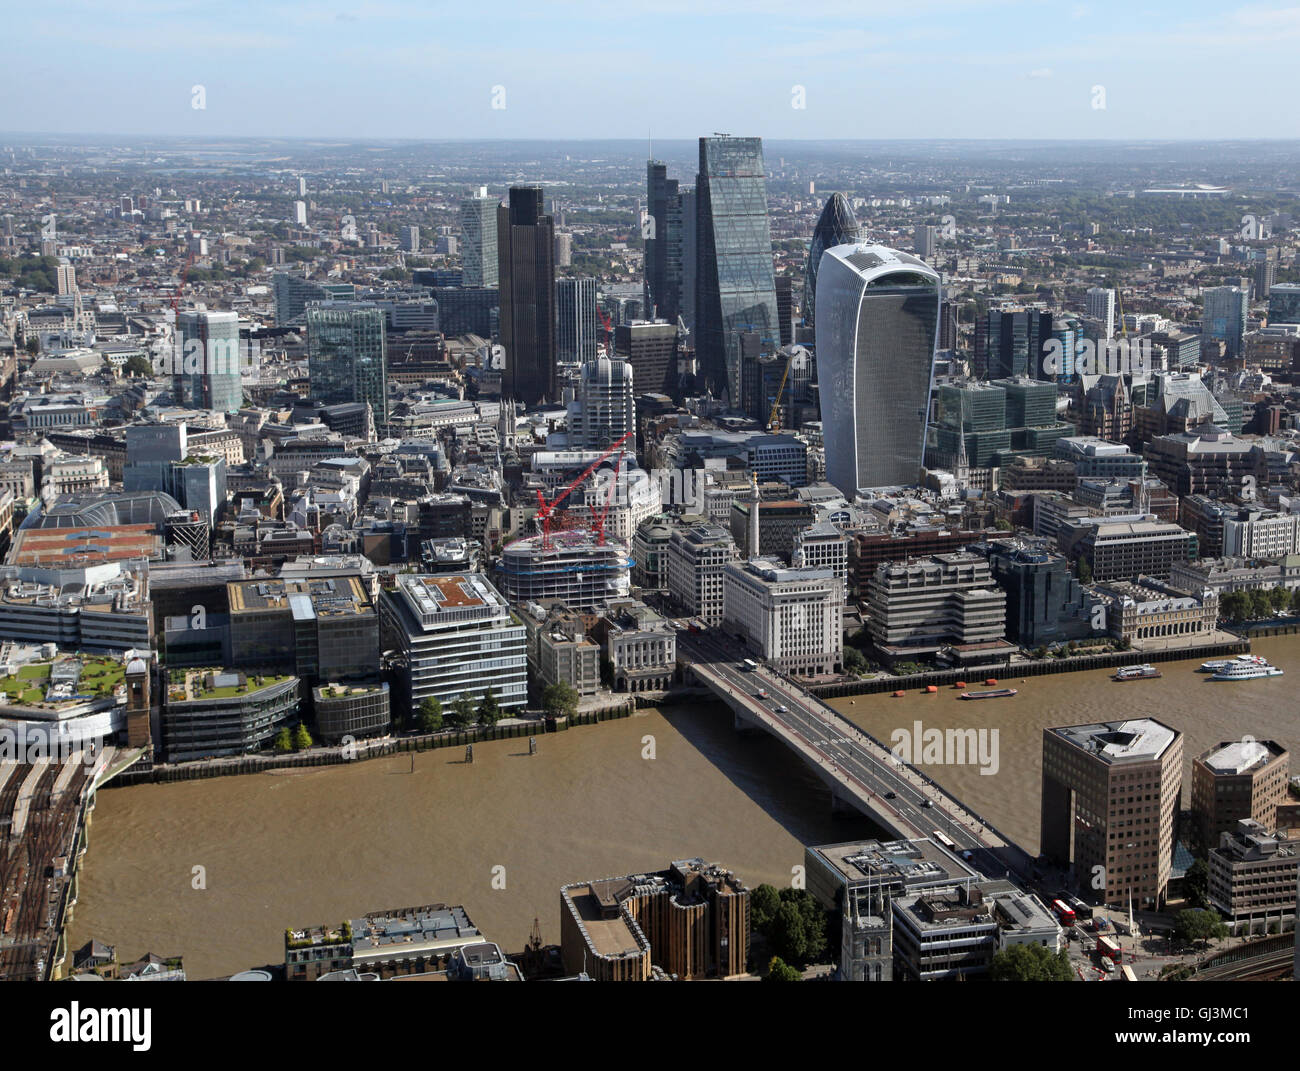 Blick auf die Skyline der City of London mit Gurke, Walkietalkie und Käsereibe Gebäuden, UK Stockfoto